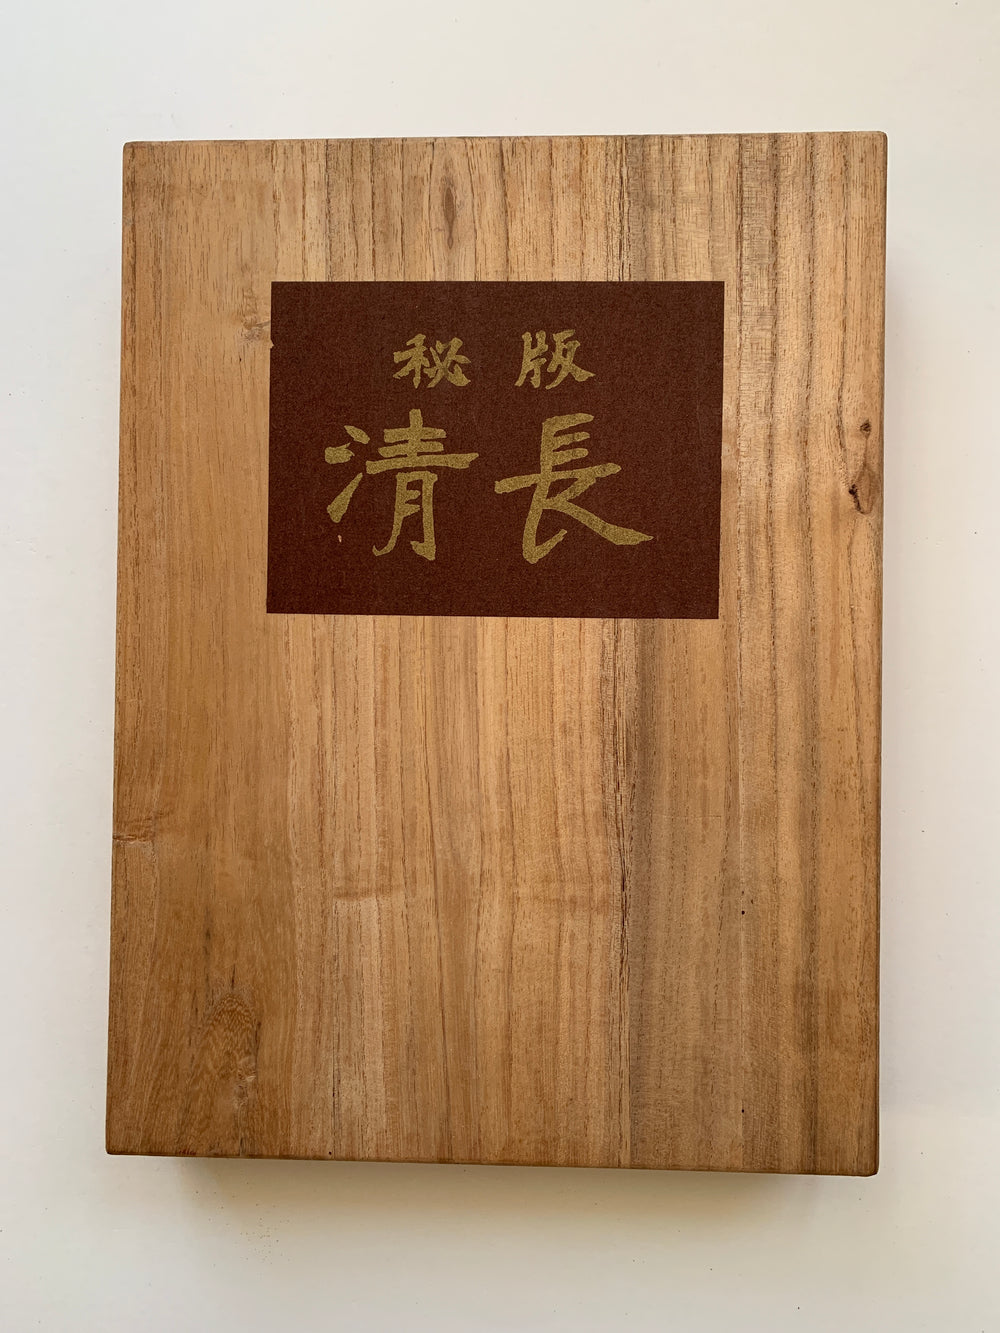 Kiyonaga’s Unexhibited Masterpieces (Wooden version)